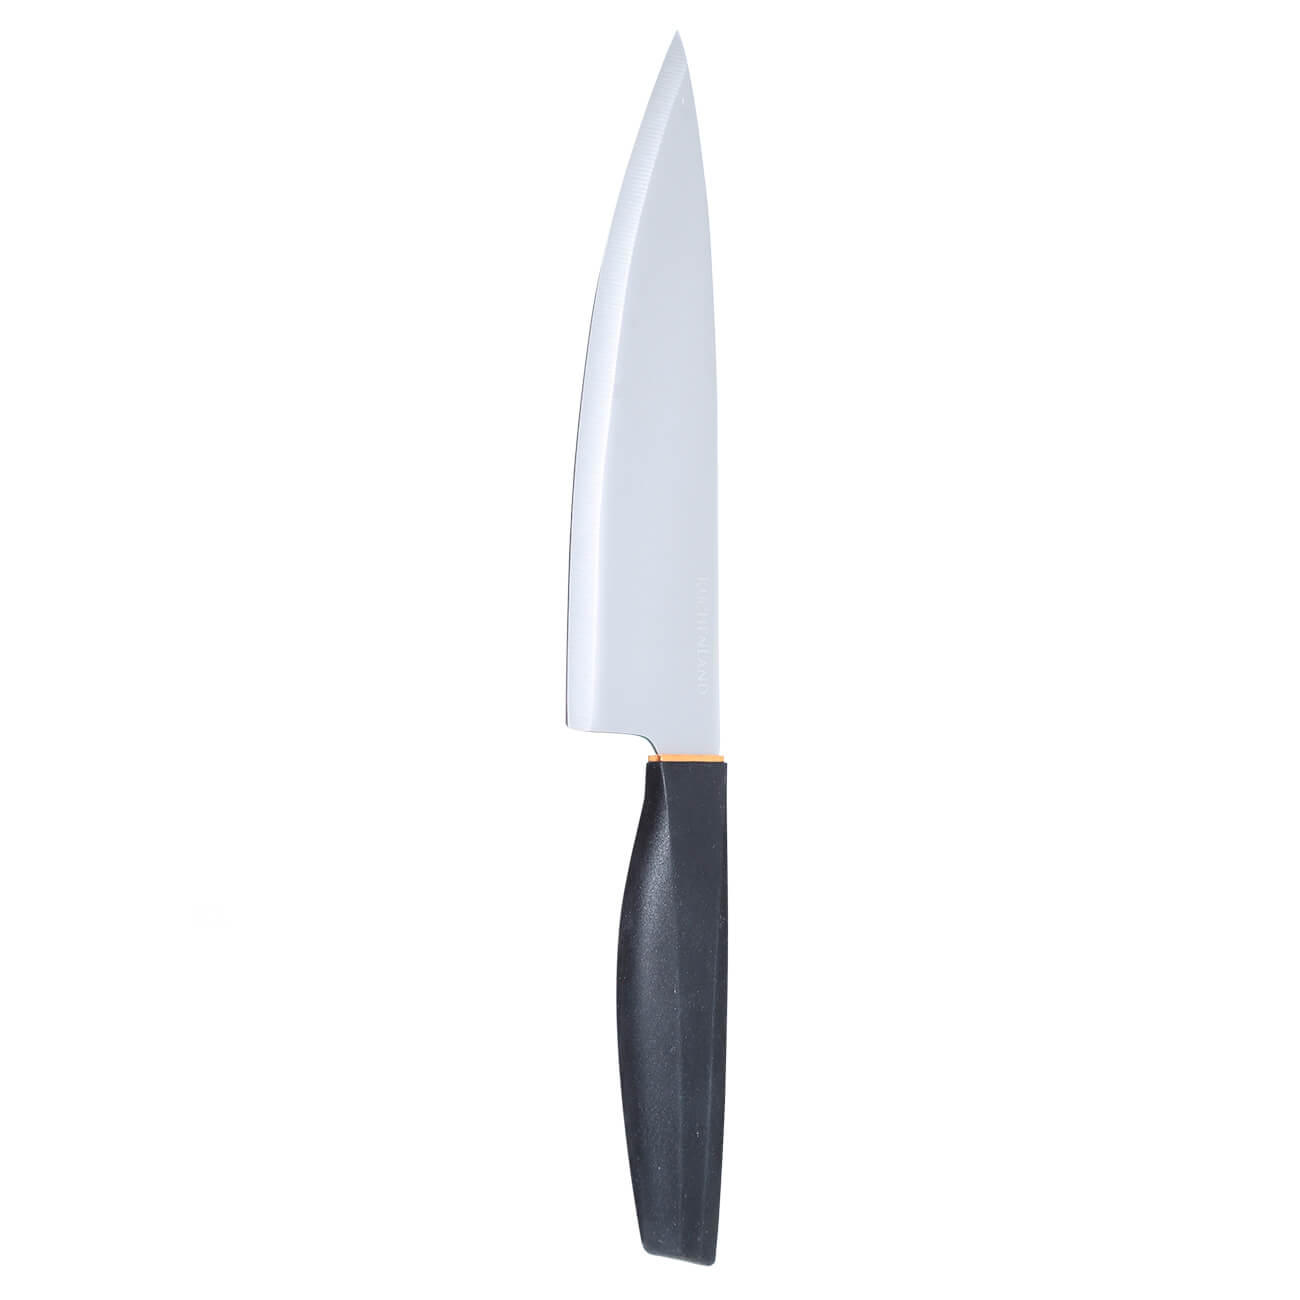 Нож поварской, 20 см, сталь/пластик/медь, Active kuchenland нож для чистки рыбы 16 см с контейнером пластик серый рыба assist